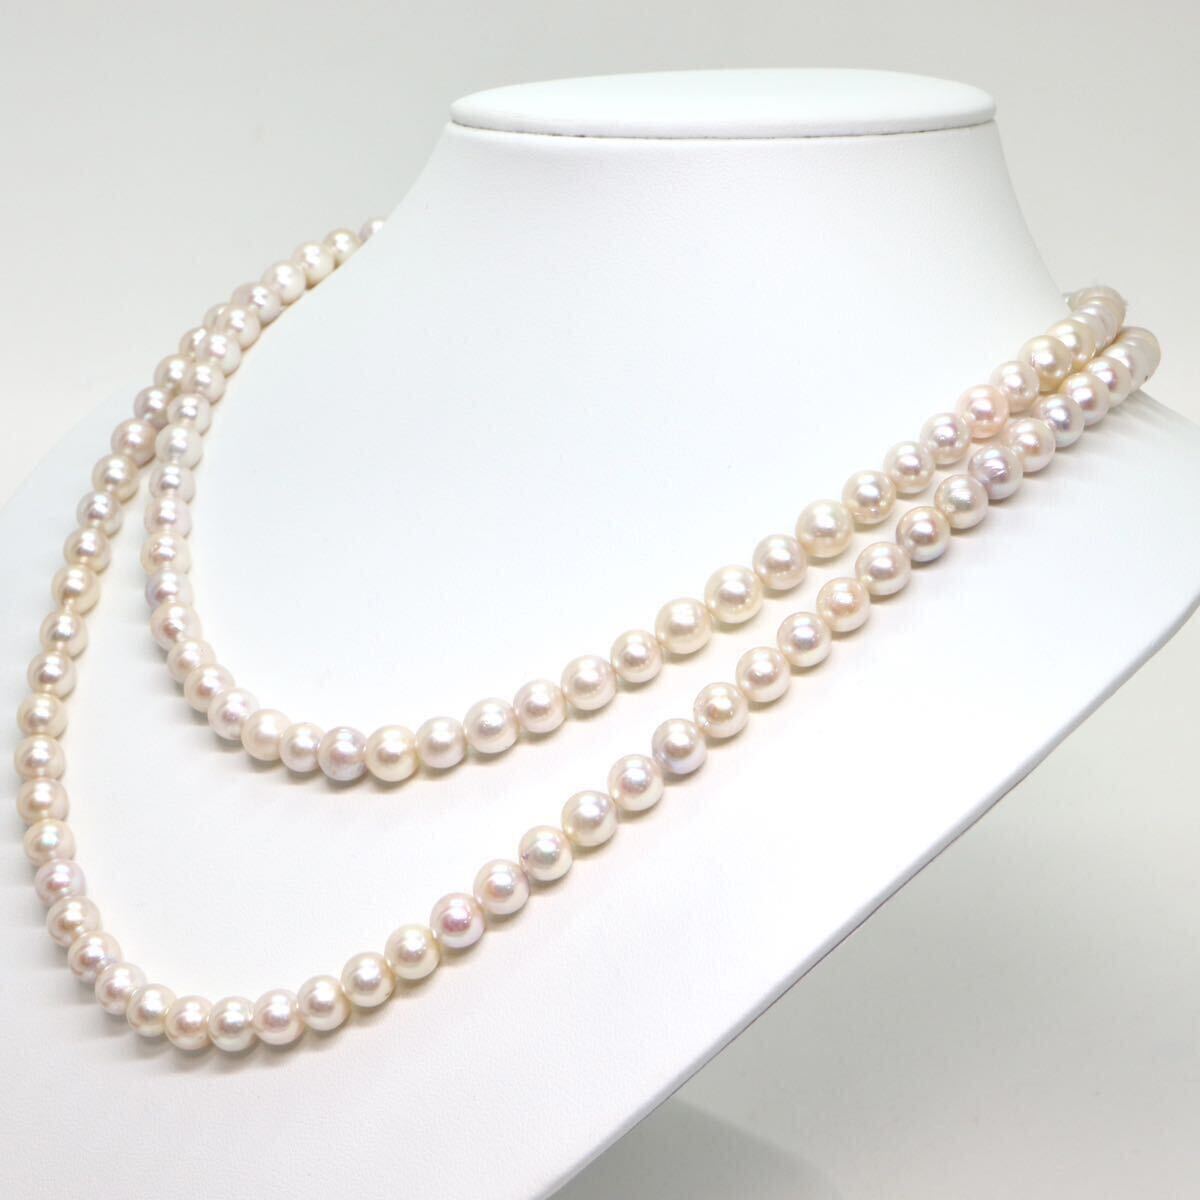 《アコヤ本真珠ロングネックレス》M 約7.0-7.5mm珠 75.1g 約100.5cm pearl necklace ジュエリー jewelry DD0/DH0_画像4